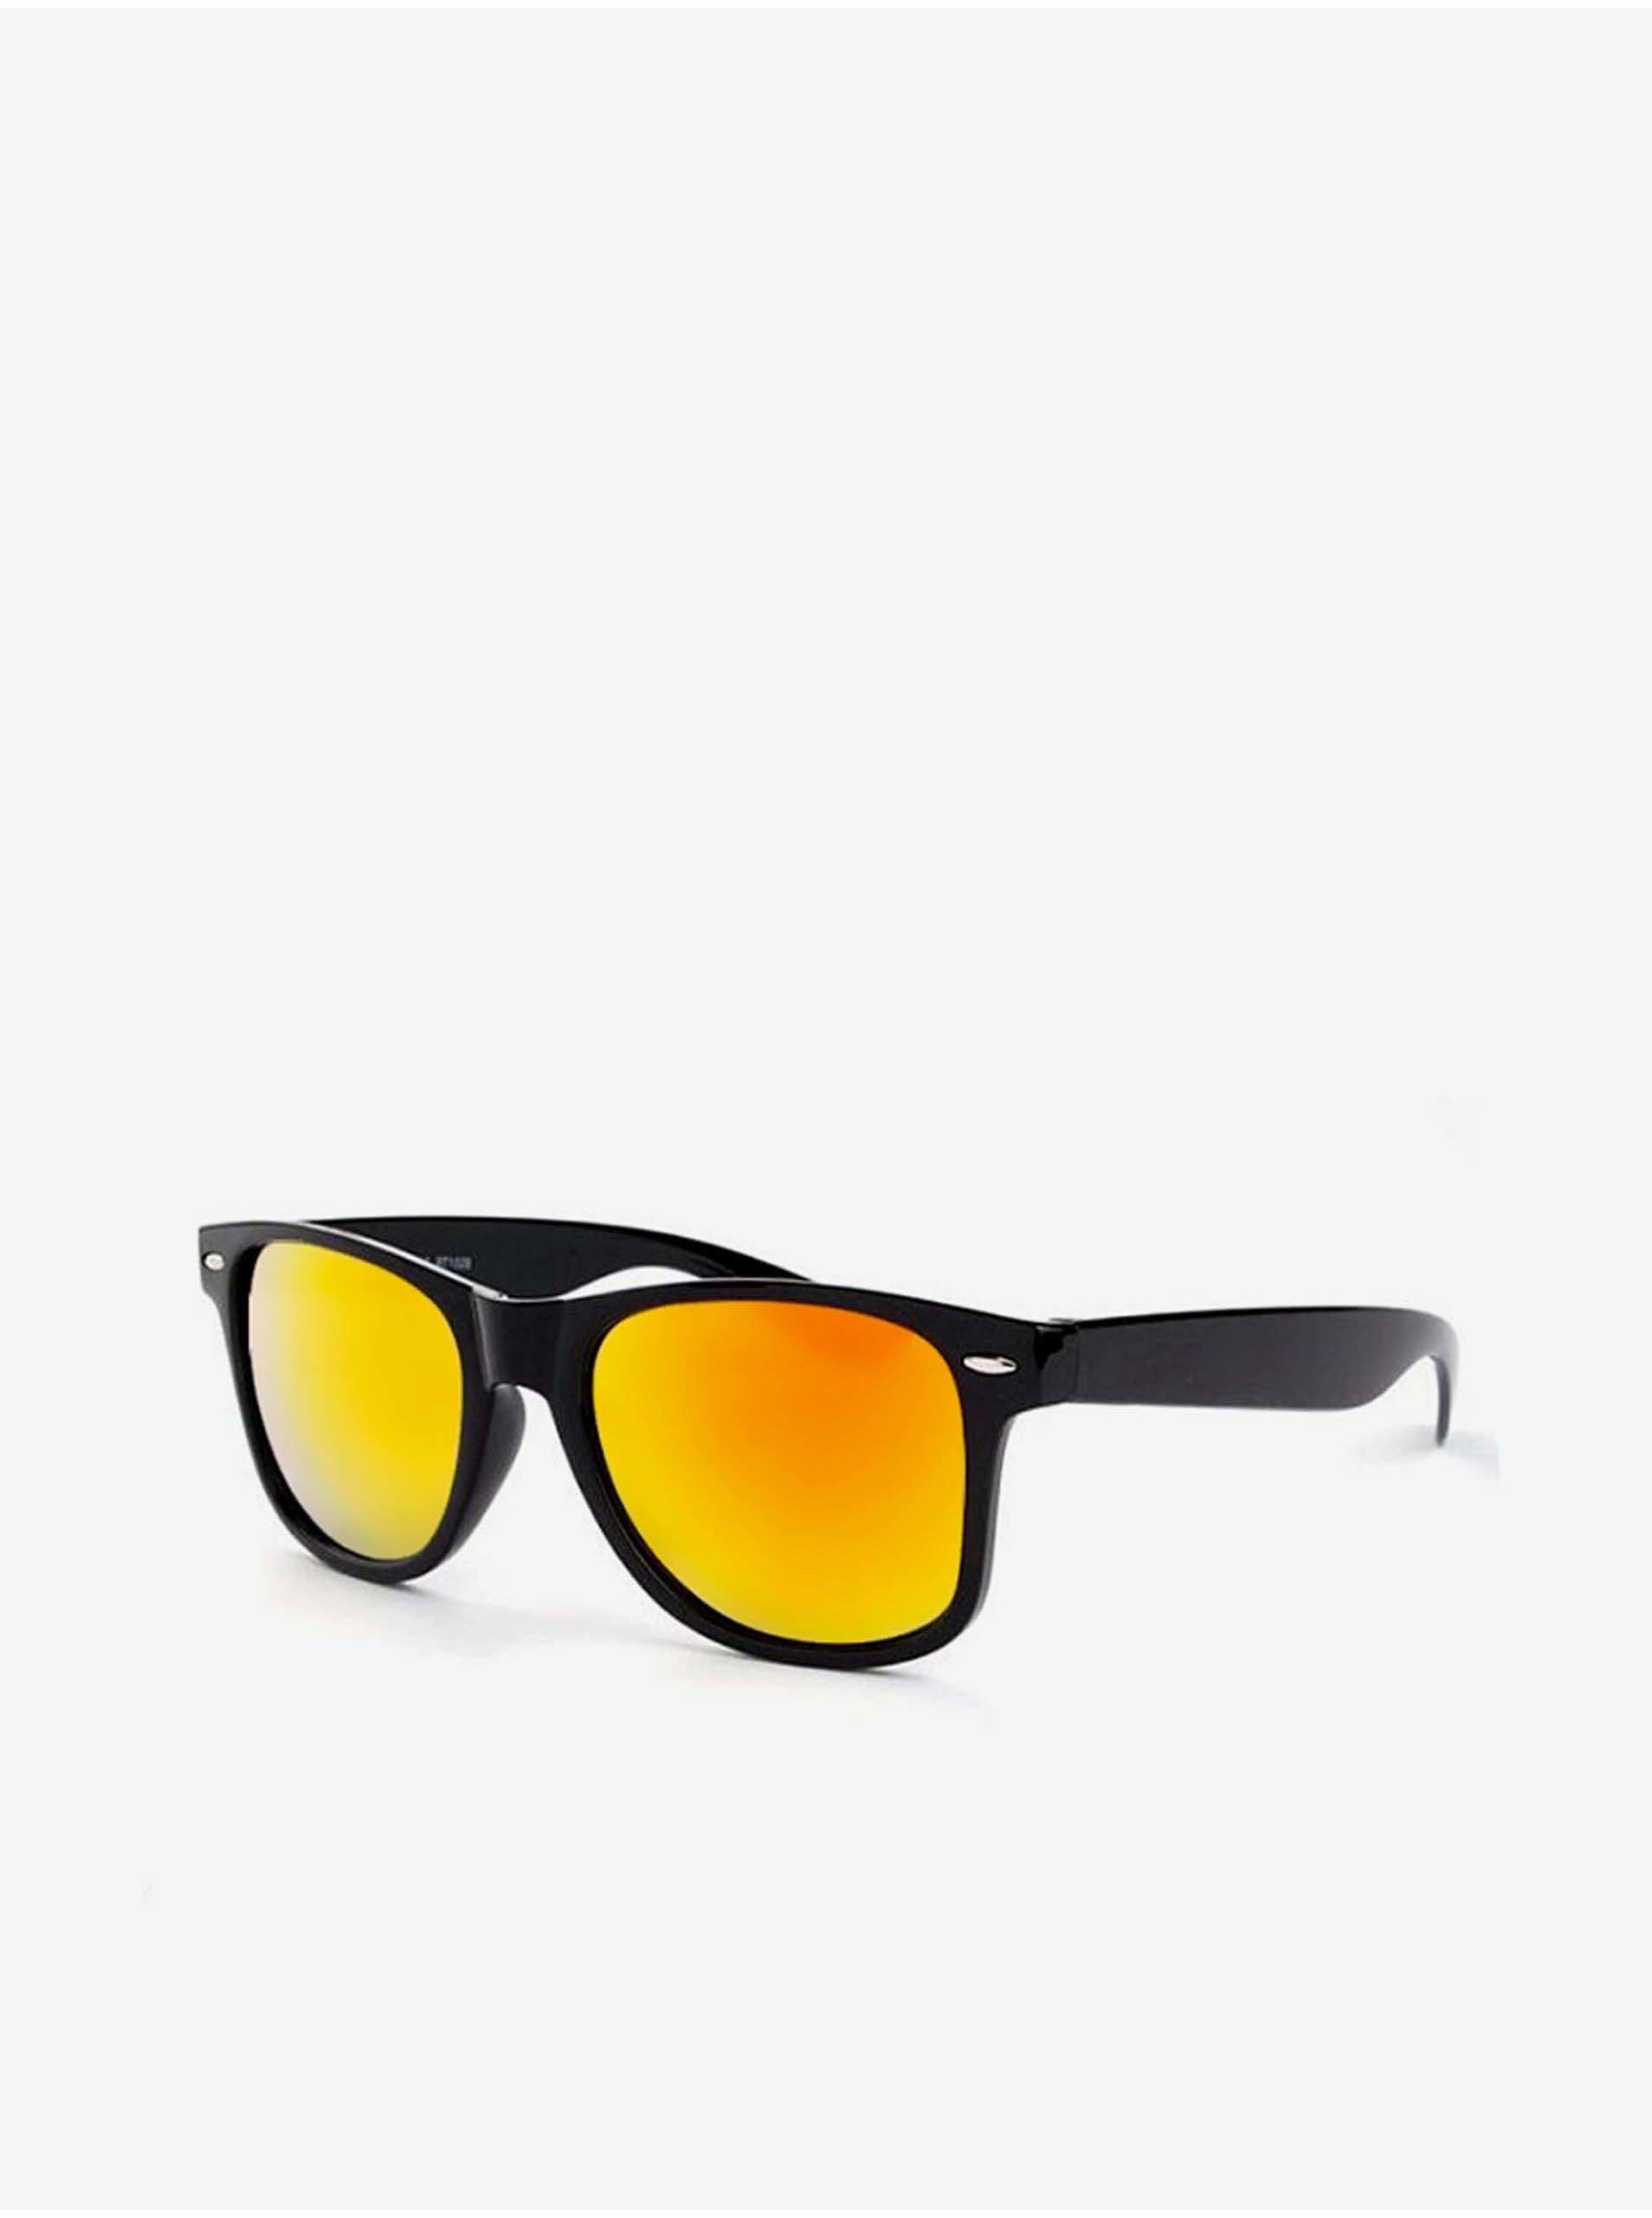 E-shop VeyRey Slnečné okuliare polarizačné Nerd čierne s červenými sklami